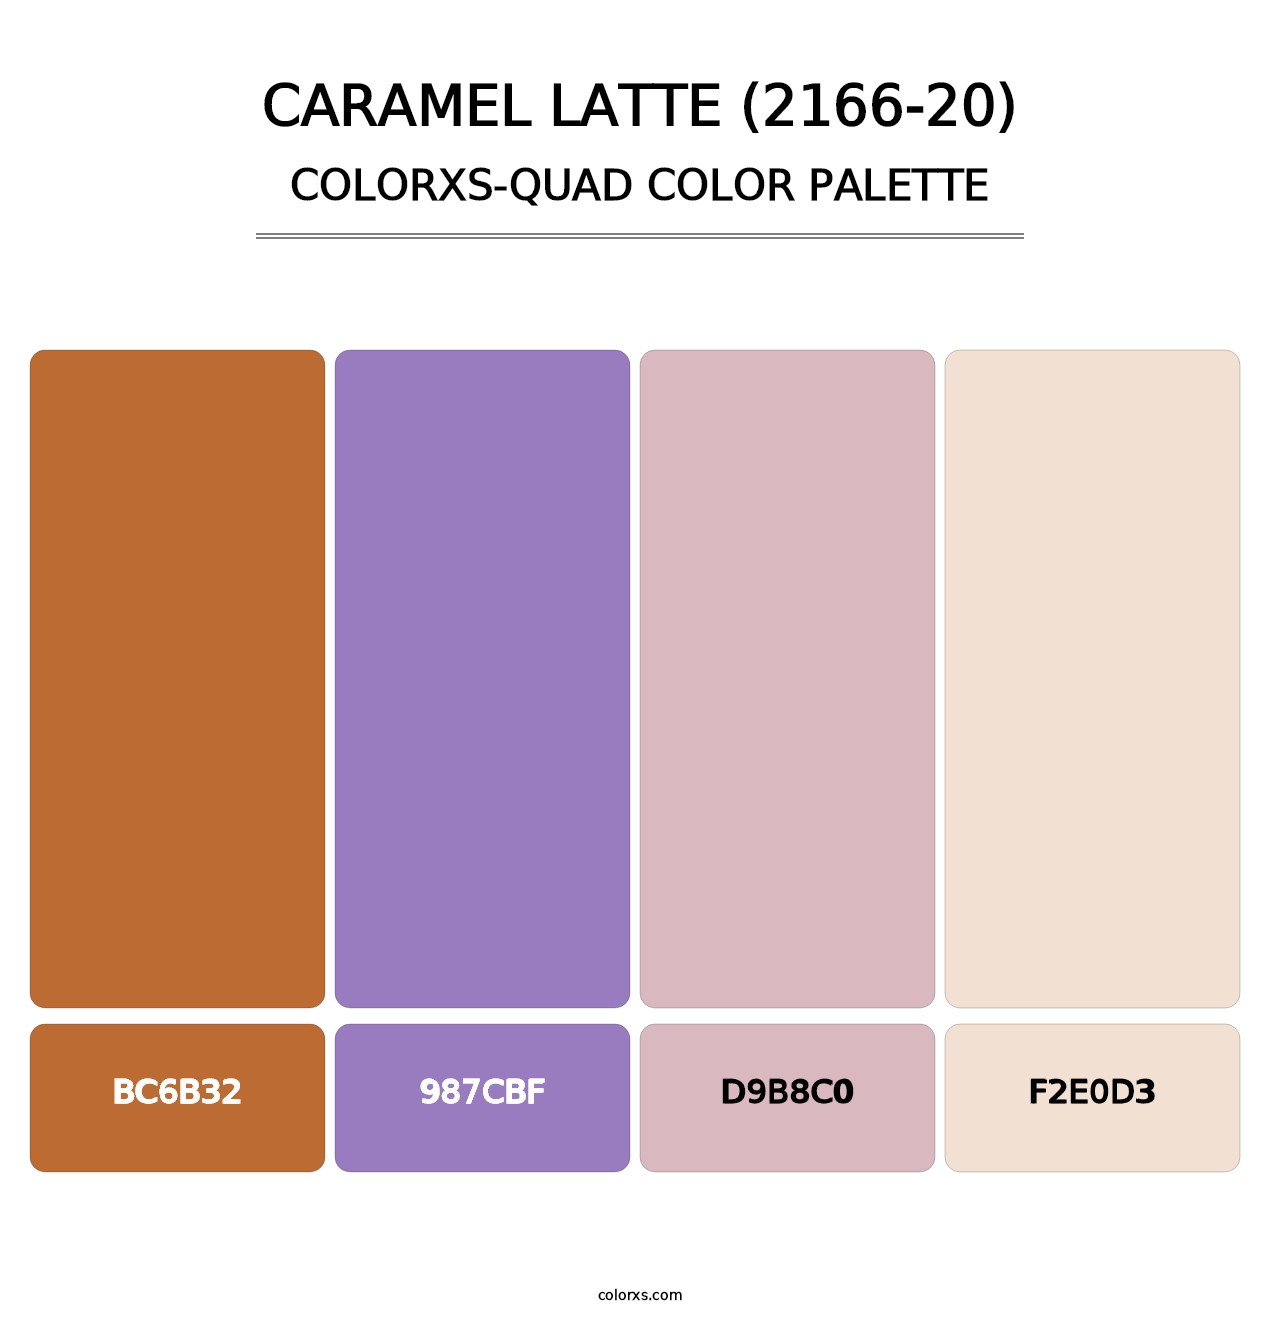 Caramel Latte (2166-20) - Colorxs Quad Palette